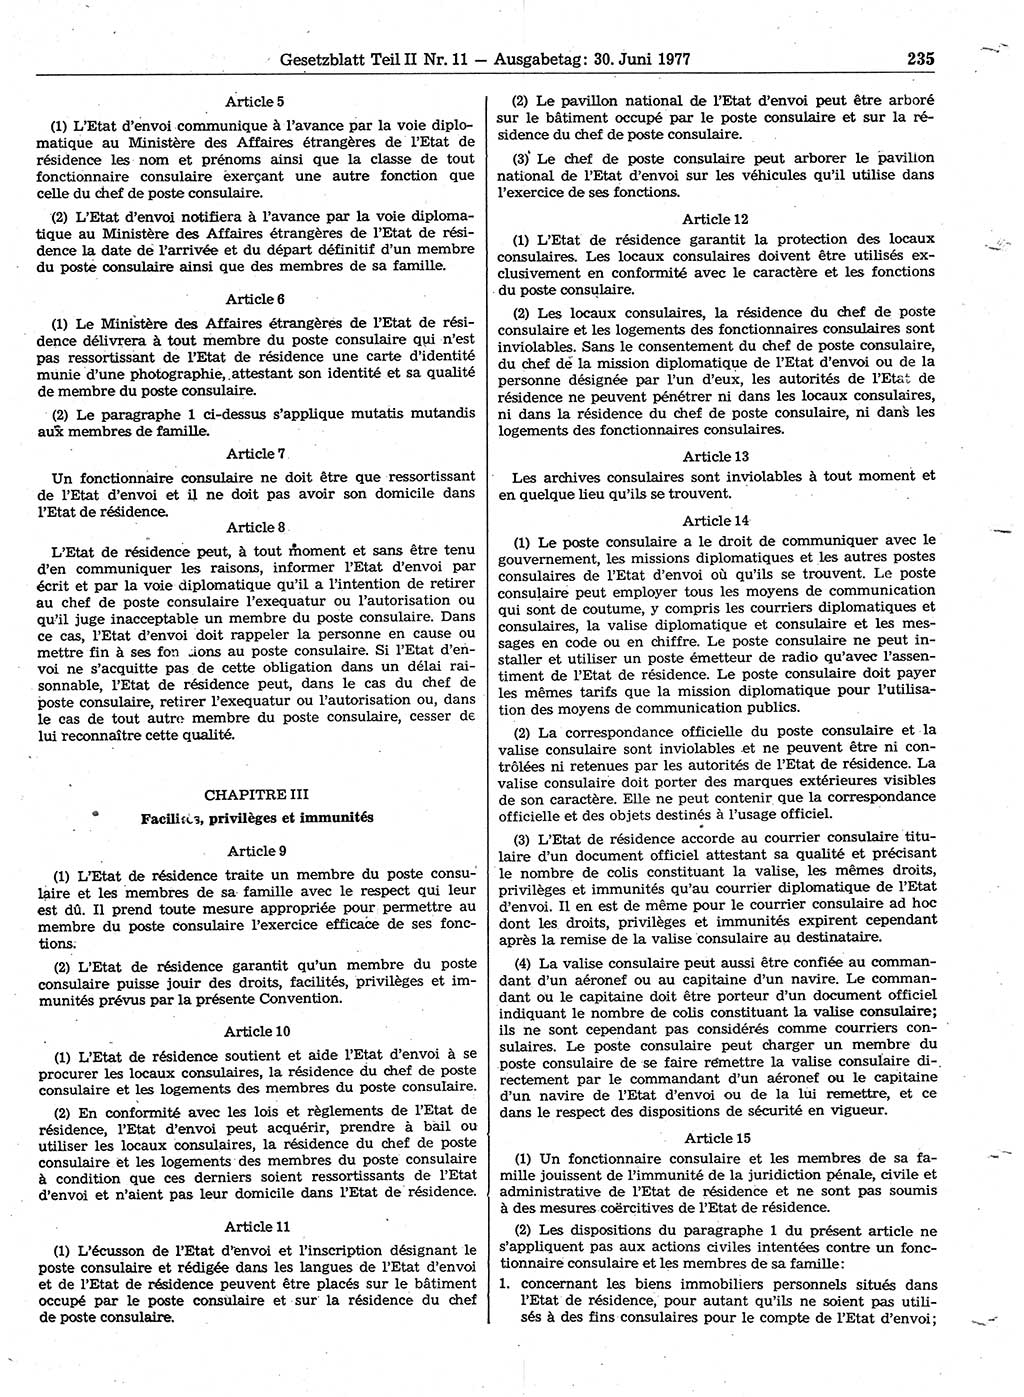 Gesetzblatt (GBl.) der Deutschen Demokratischen Republik (DDR) Teil ⅠⅠ 1977, Seite 235 (GBl. DDR ⅠⅠ 1977, S. 235)